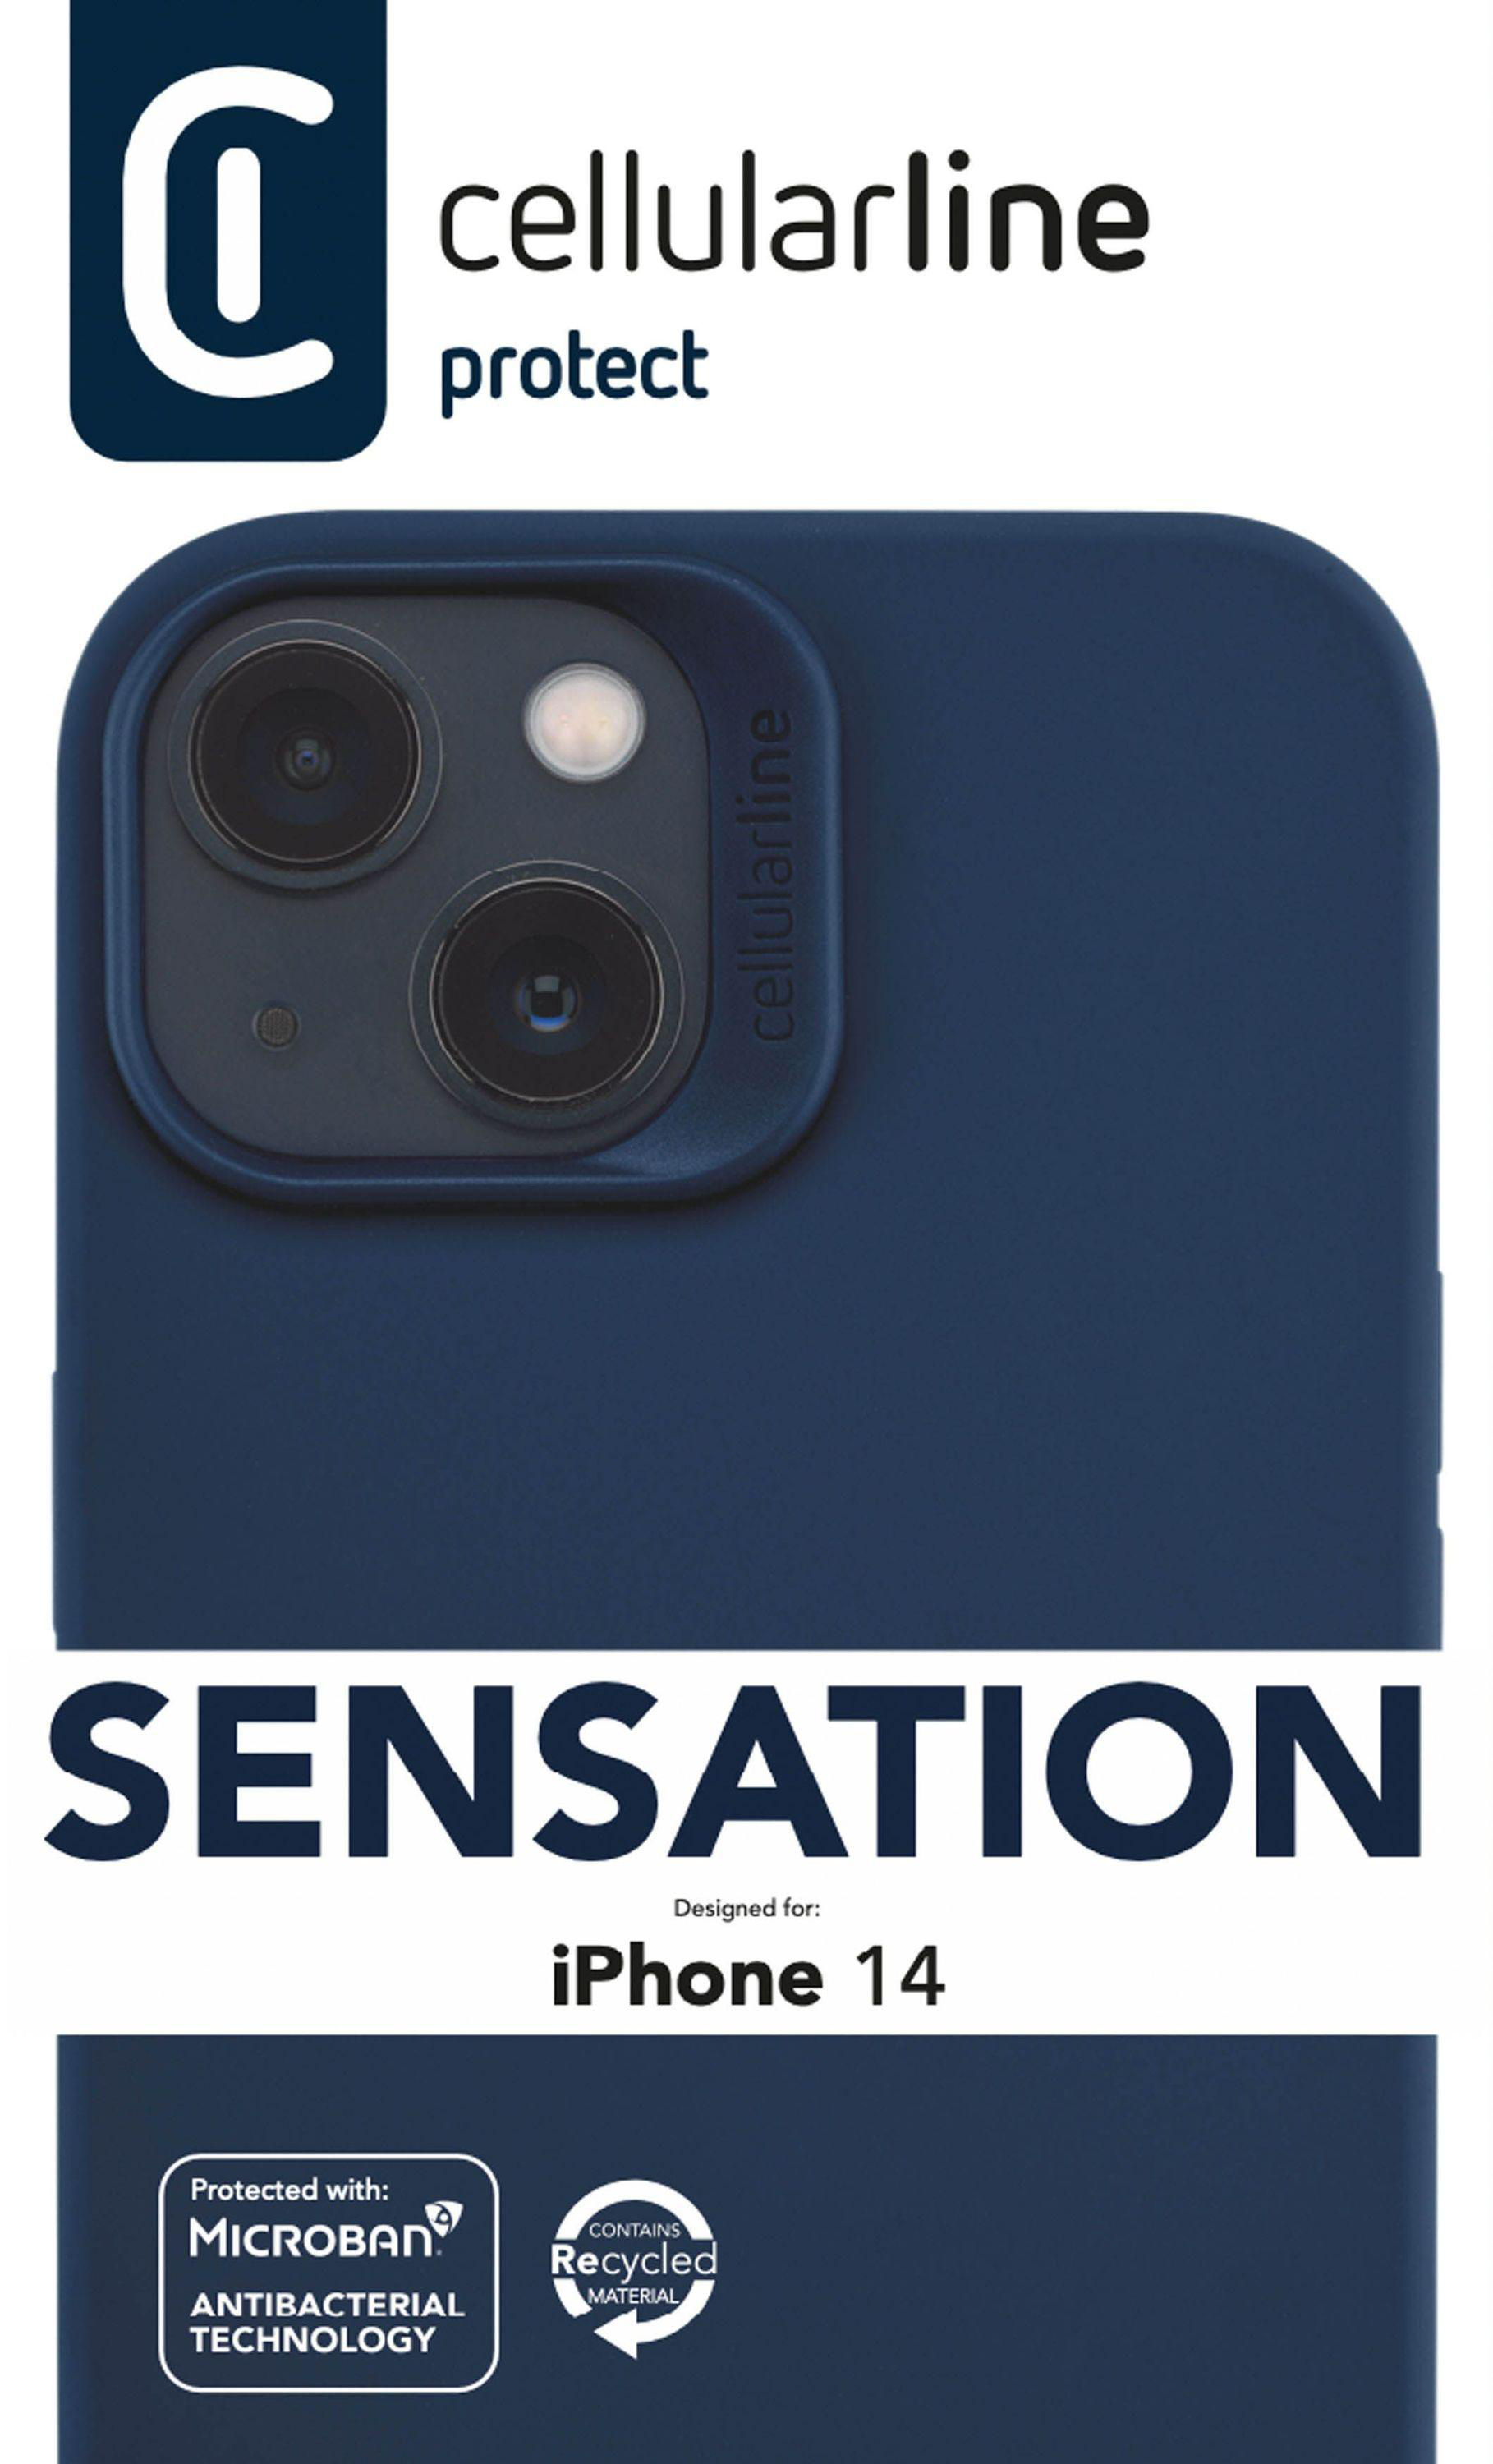 CELLULAR LINE Sensation, Apple, iPhone Backcover, Blue 14